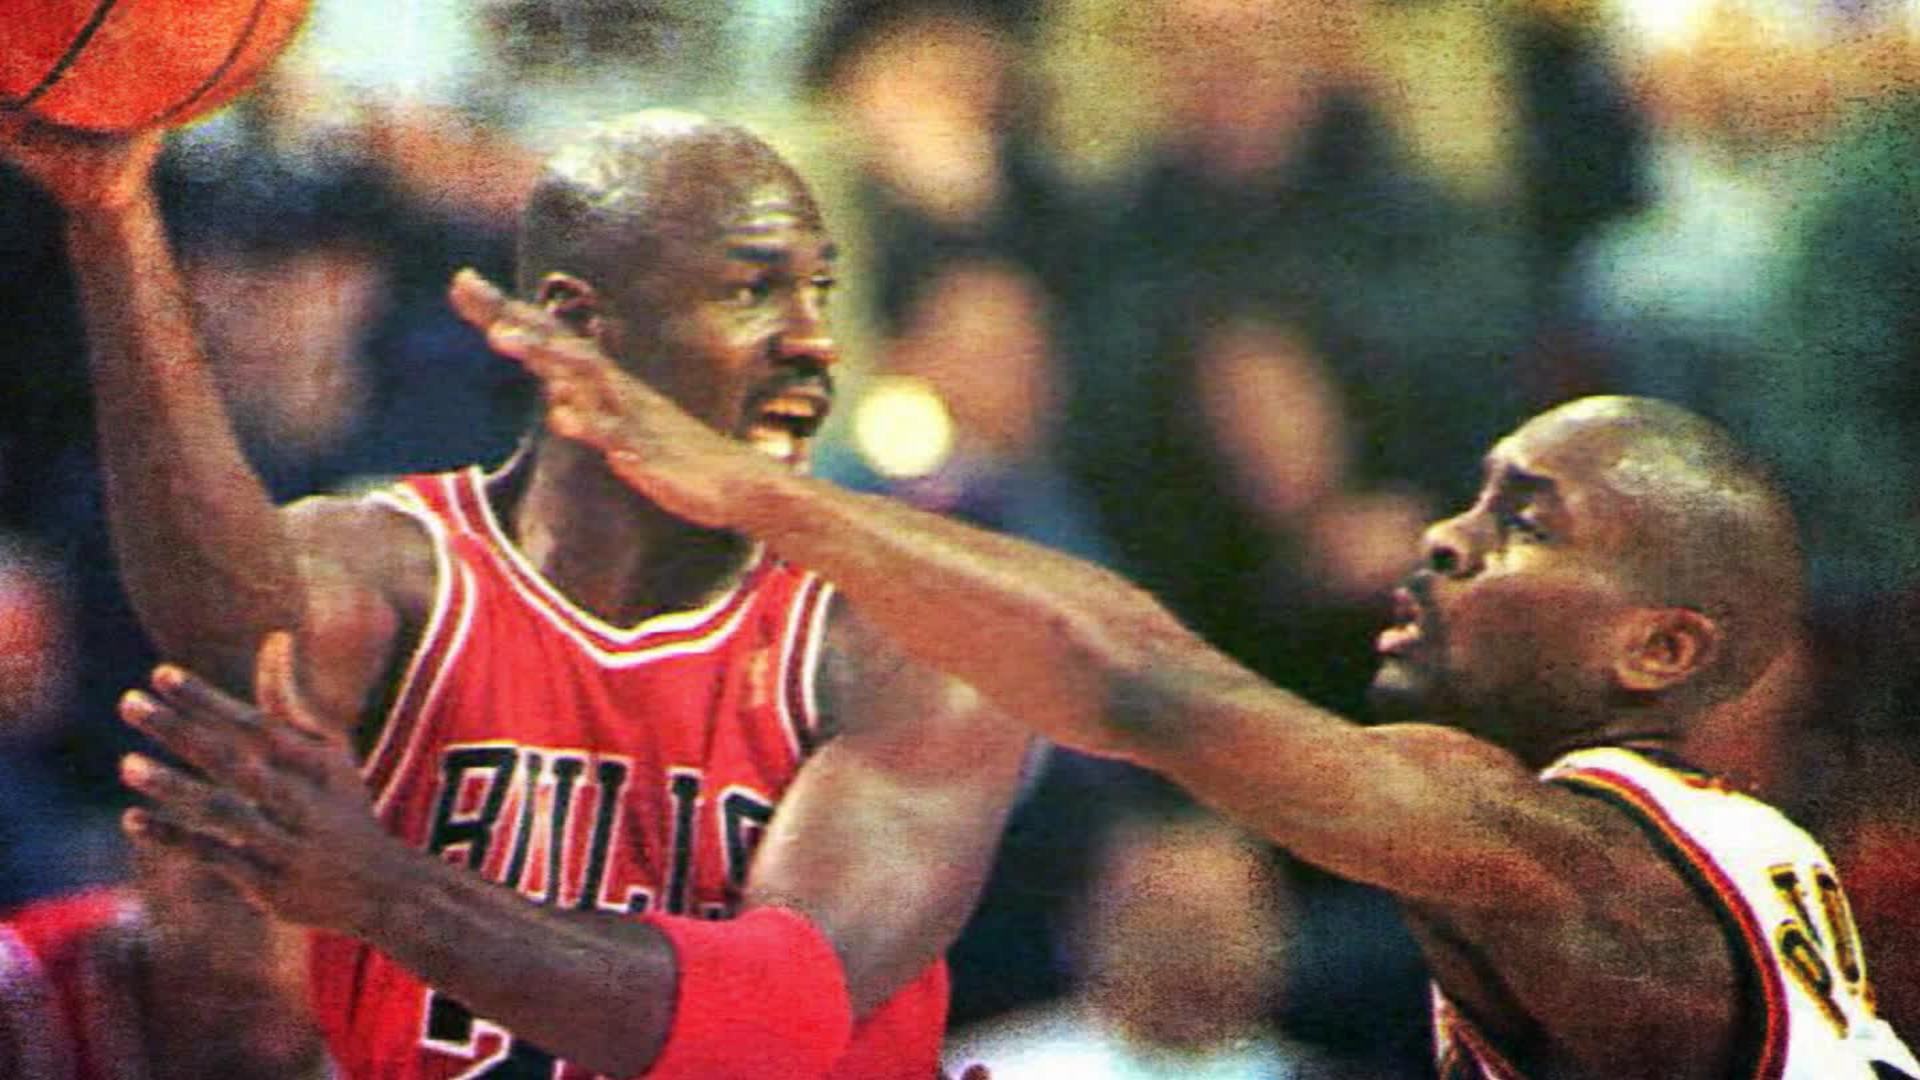 espíritu ley barba Cinco rivales que no pudieron con Michael Jordan - CNN Video